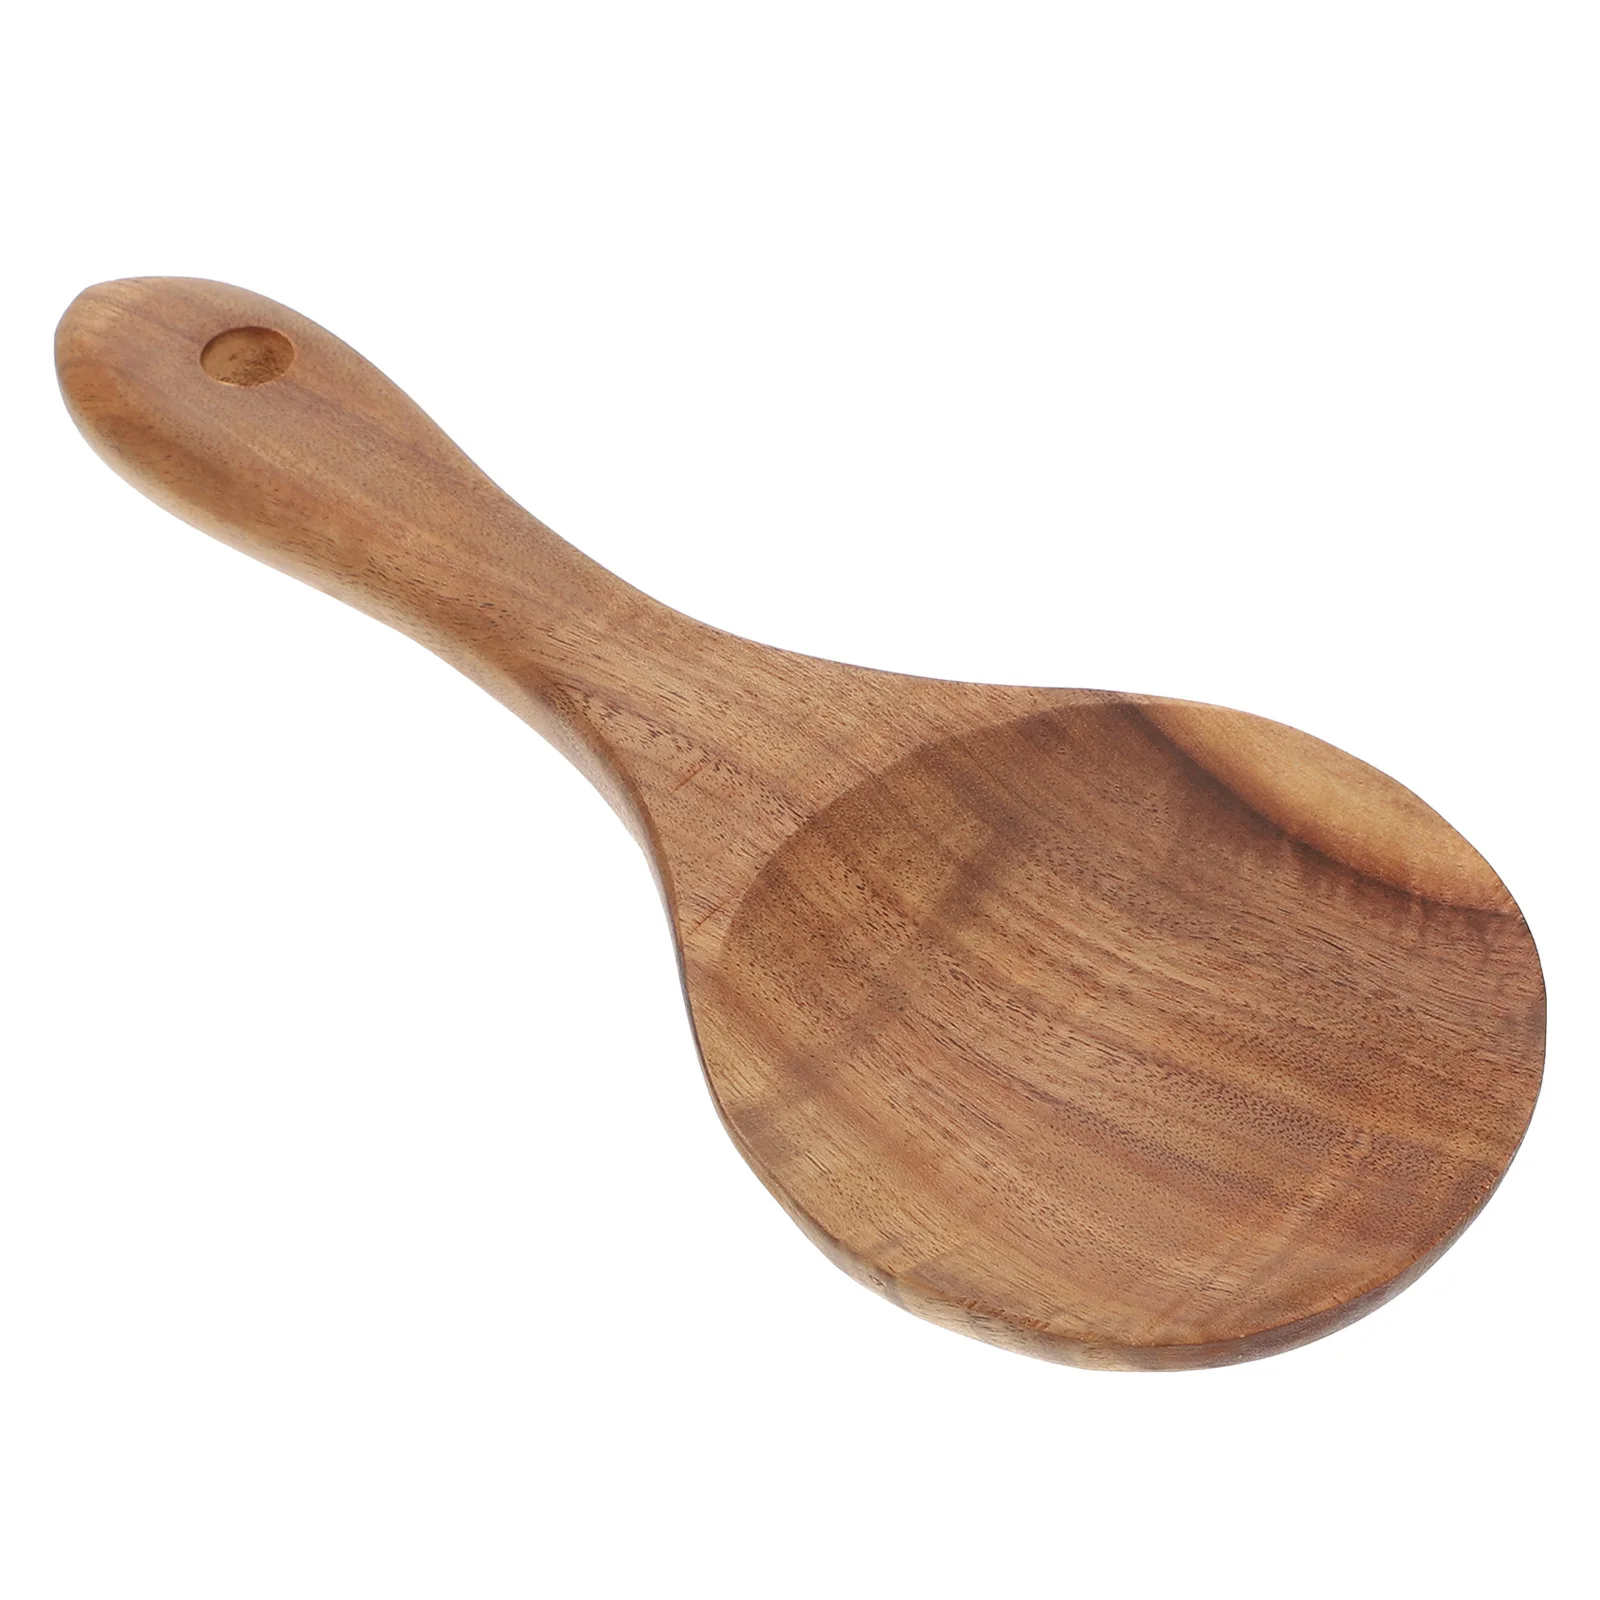 OVBBESS Cucchiaio di legno di teak Cucchiaio di riso in legno massello naturale di riso pagaia grande patata cucchiaio da portata in legno utensili da cucina 